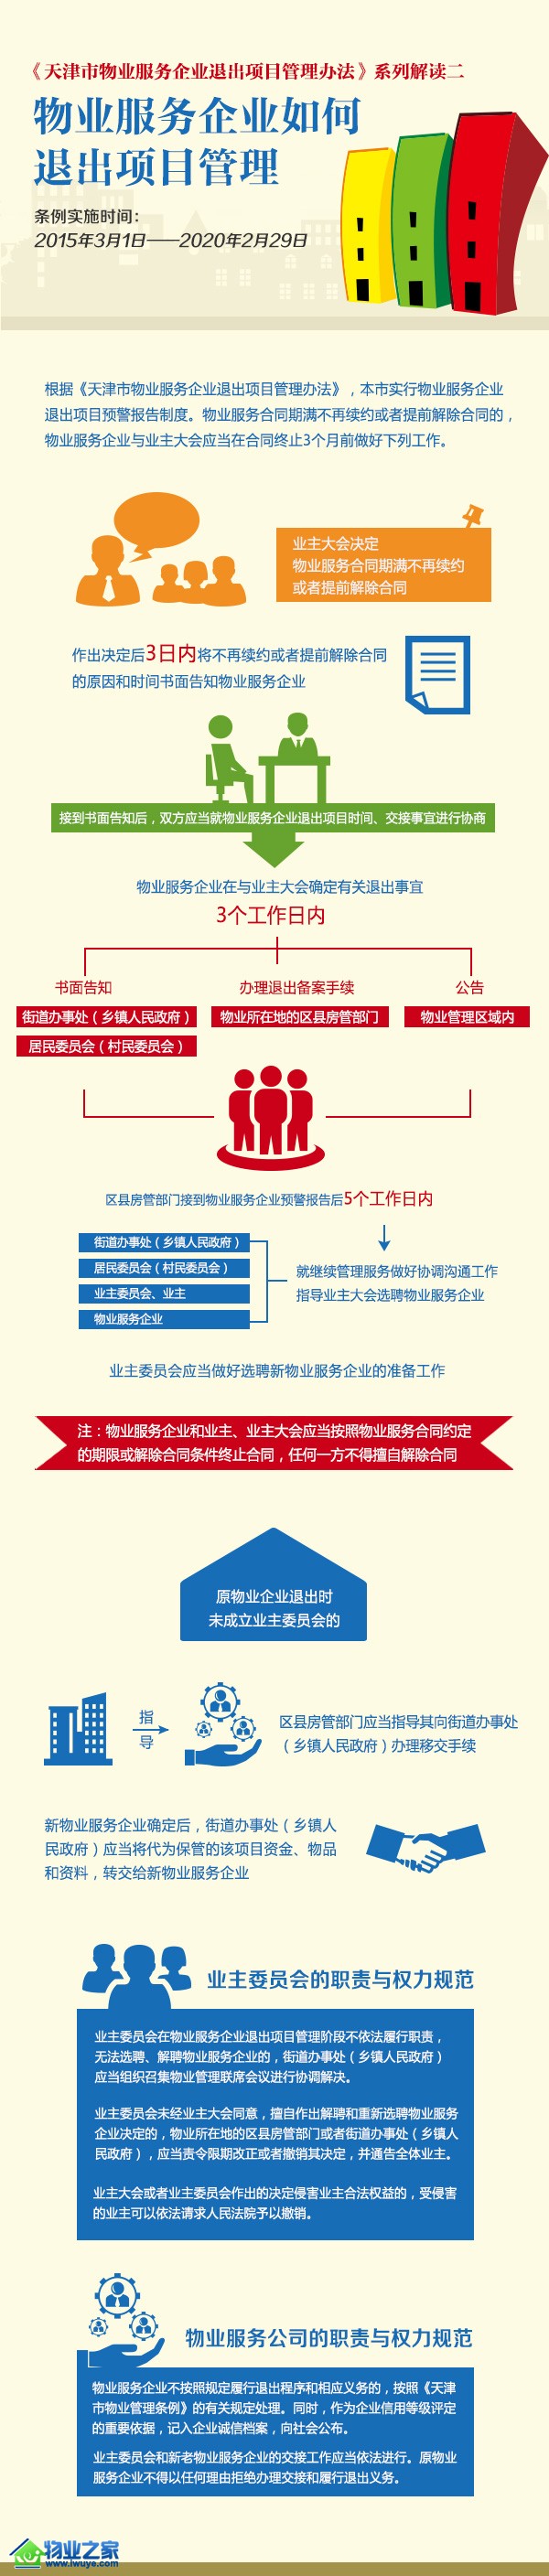 图解天津市物业服务企业如何退出项目管理